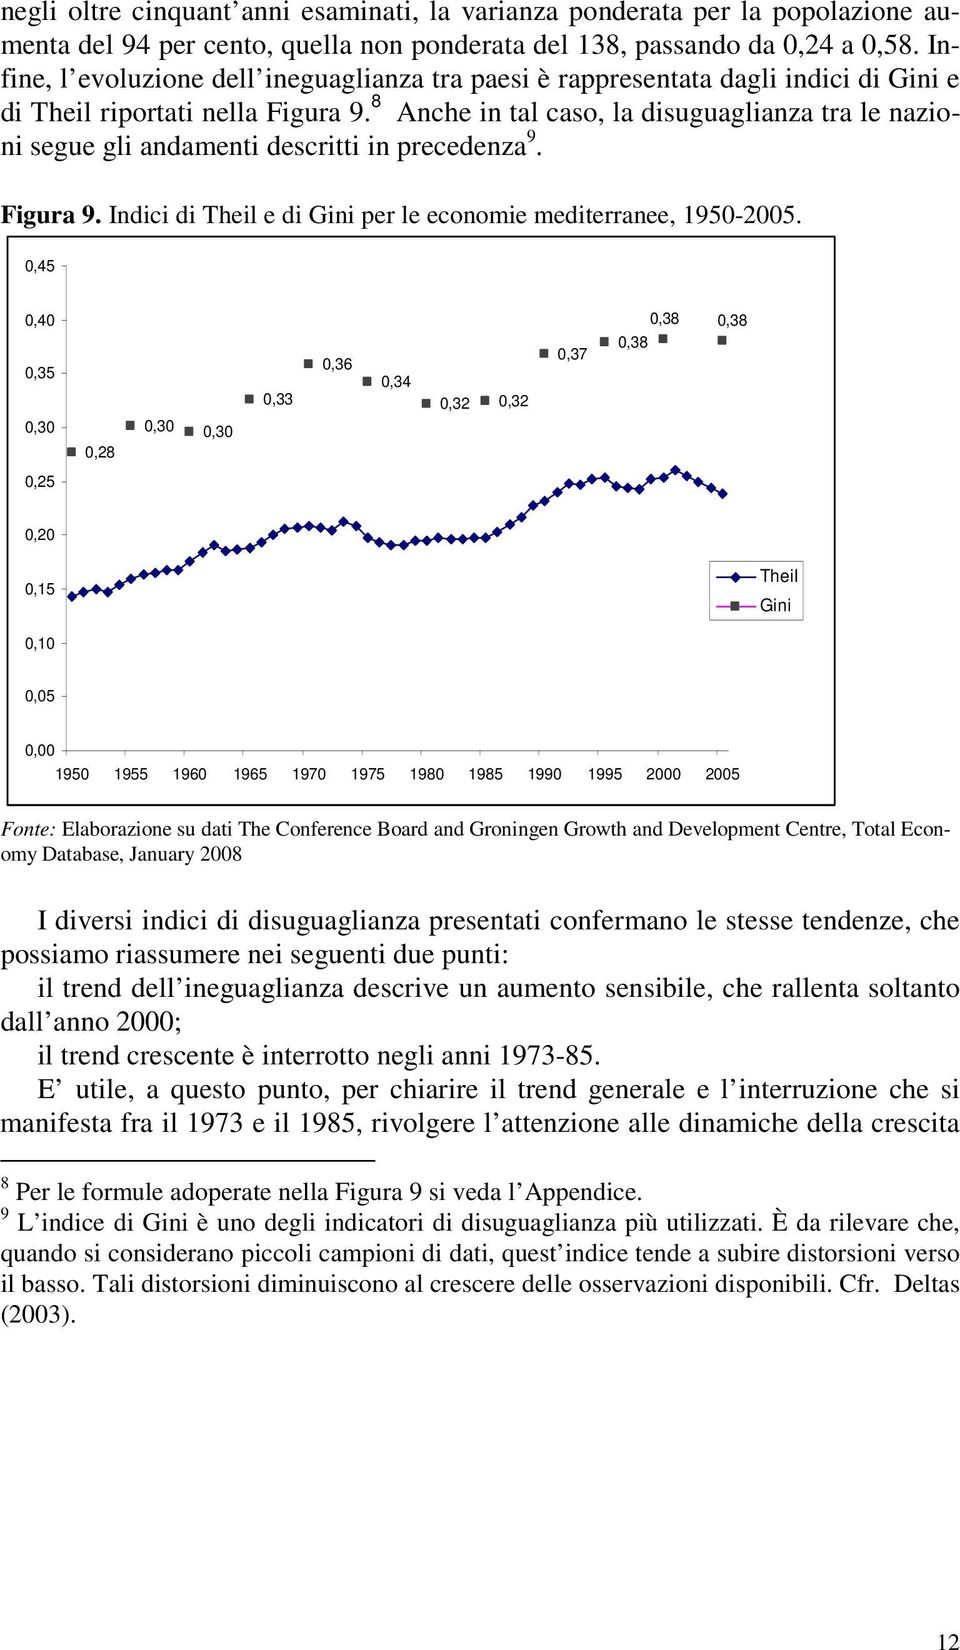 8 Anche in tal caso, la disuguaglianza tra le nazioni segue gli andamenti descritti in precedenza 9. Figura 9. Indici di Theil e di Gini per le economie mediterranee, 1950-2005.